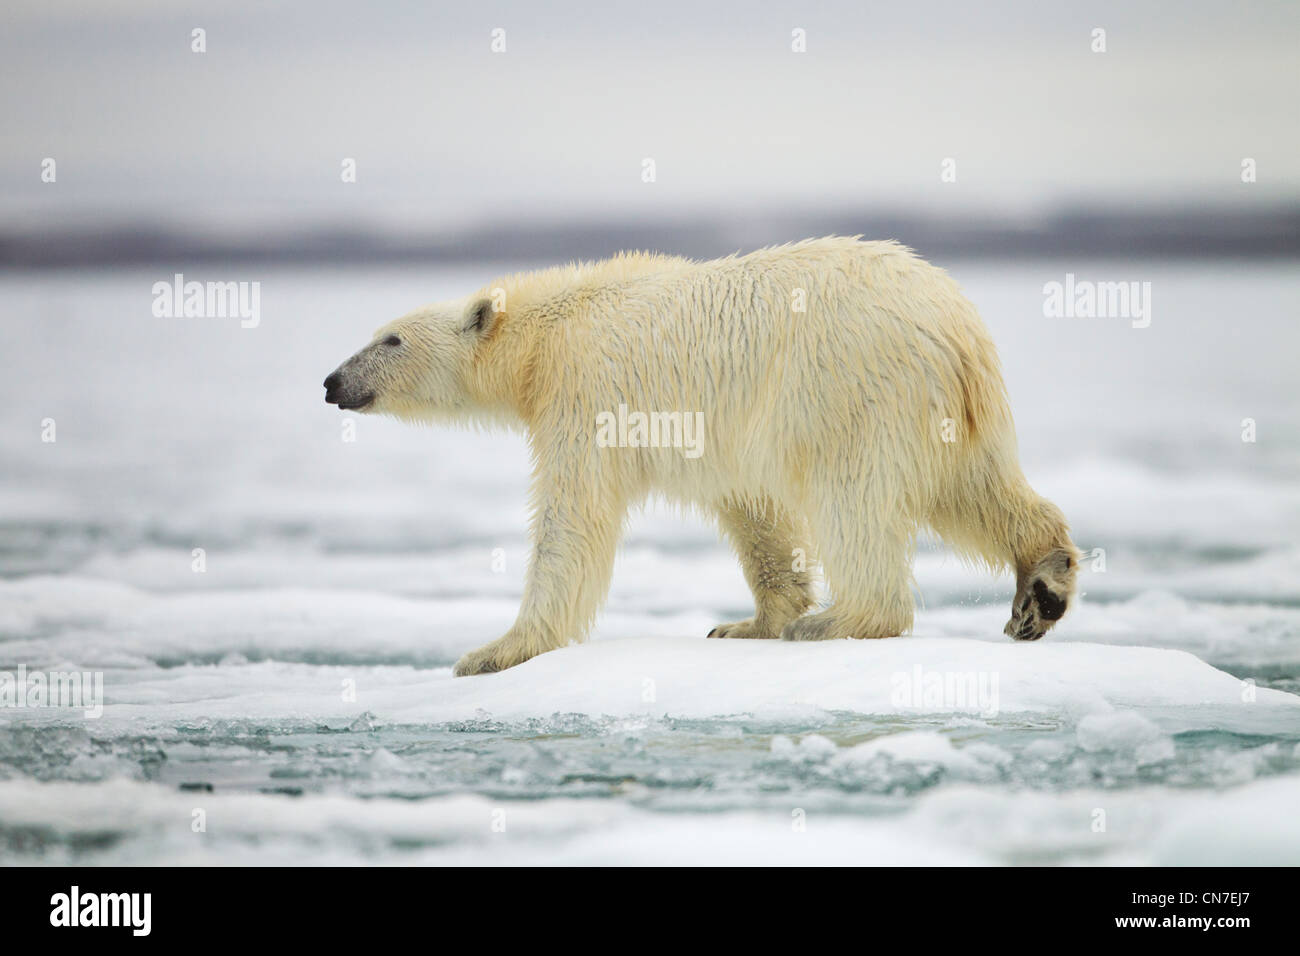 Norvegia Isole Svalbard, isola Spitsbergen, orso polare (Ursus maritimus) passeggiate attraverso le padelle della fusione del ghiaccio marino Foto Stock